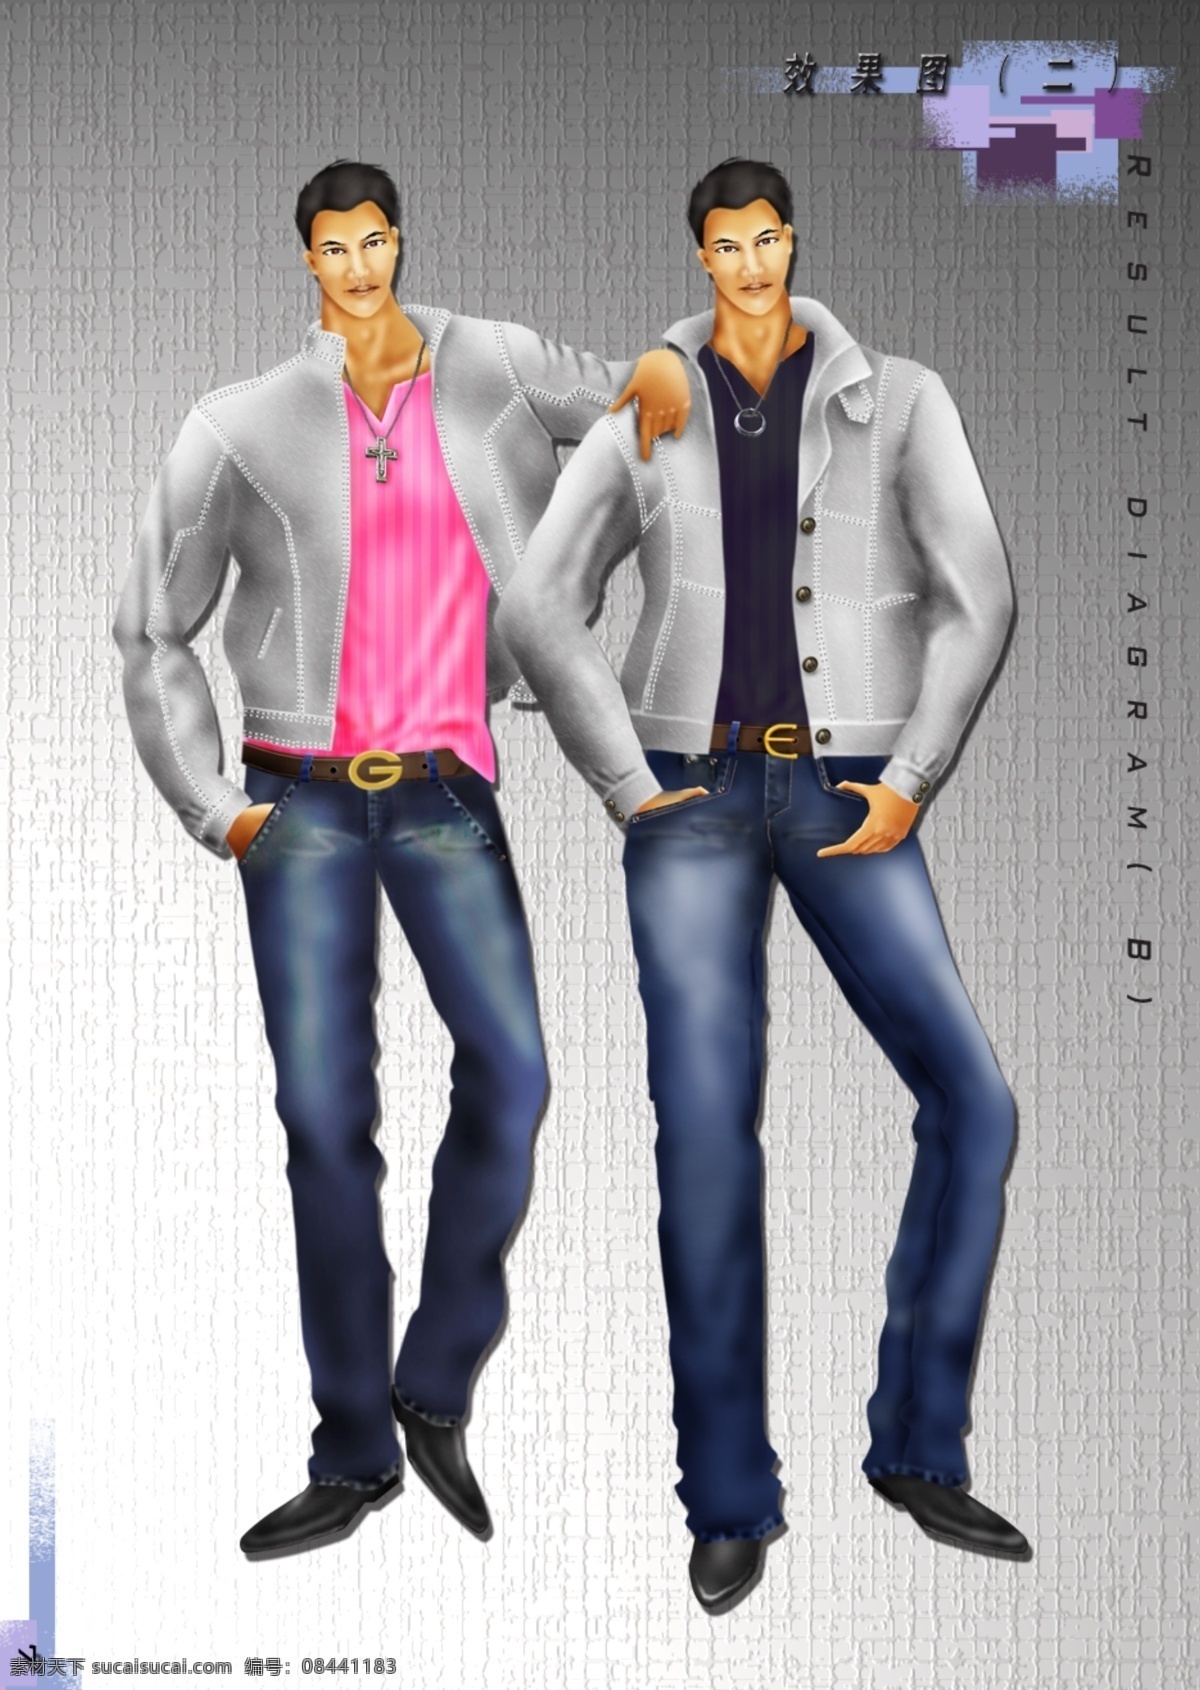 男人 服装 效果图 服装效果图 灰色 男模 牛仔裤 服装设计 服装款式图